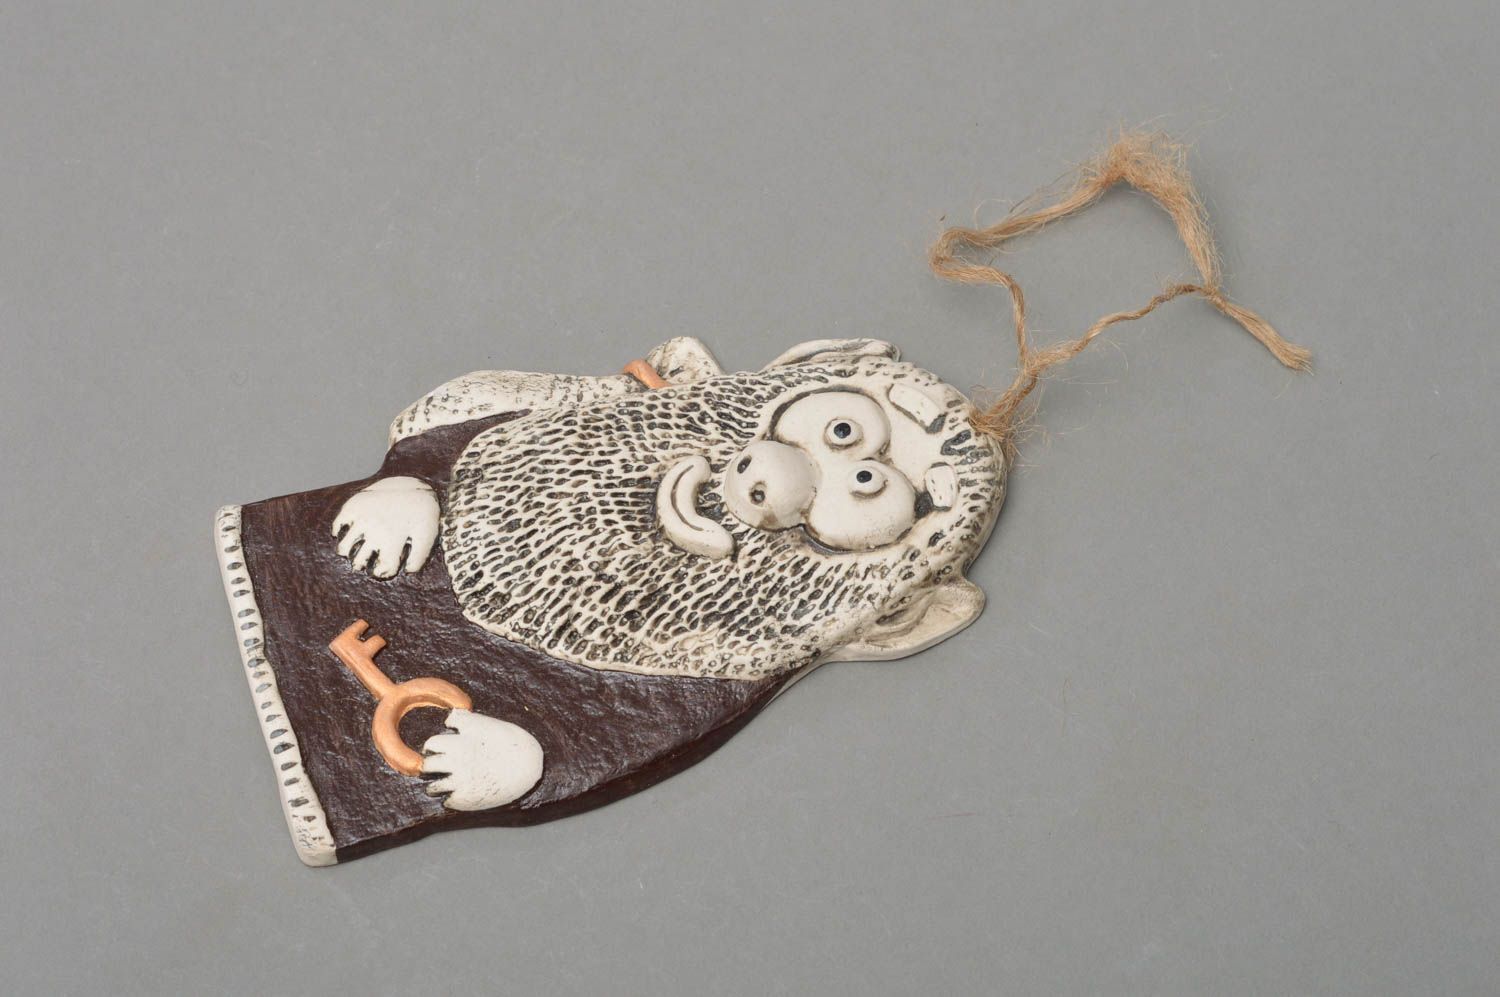 Souvenir handmade interior pendant made of porcelain House spirit with key photo 1